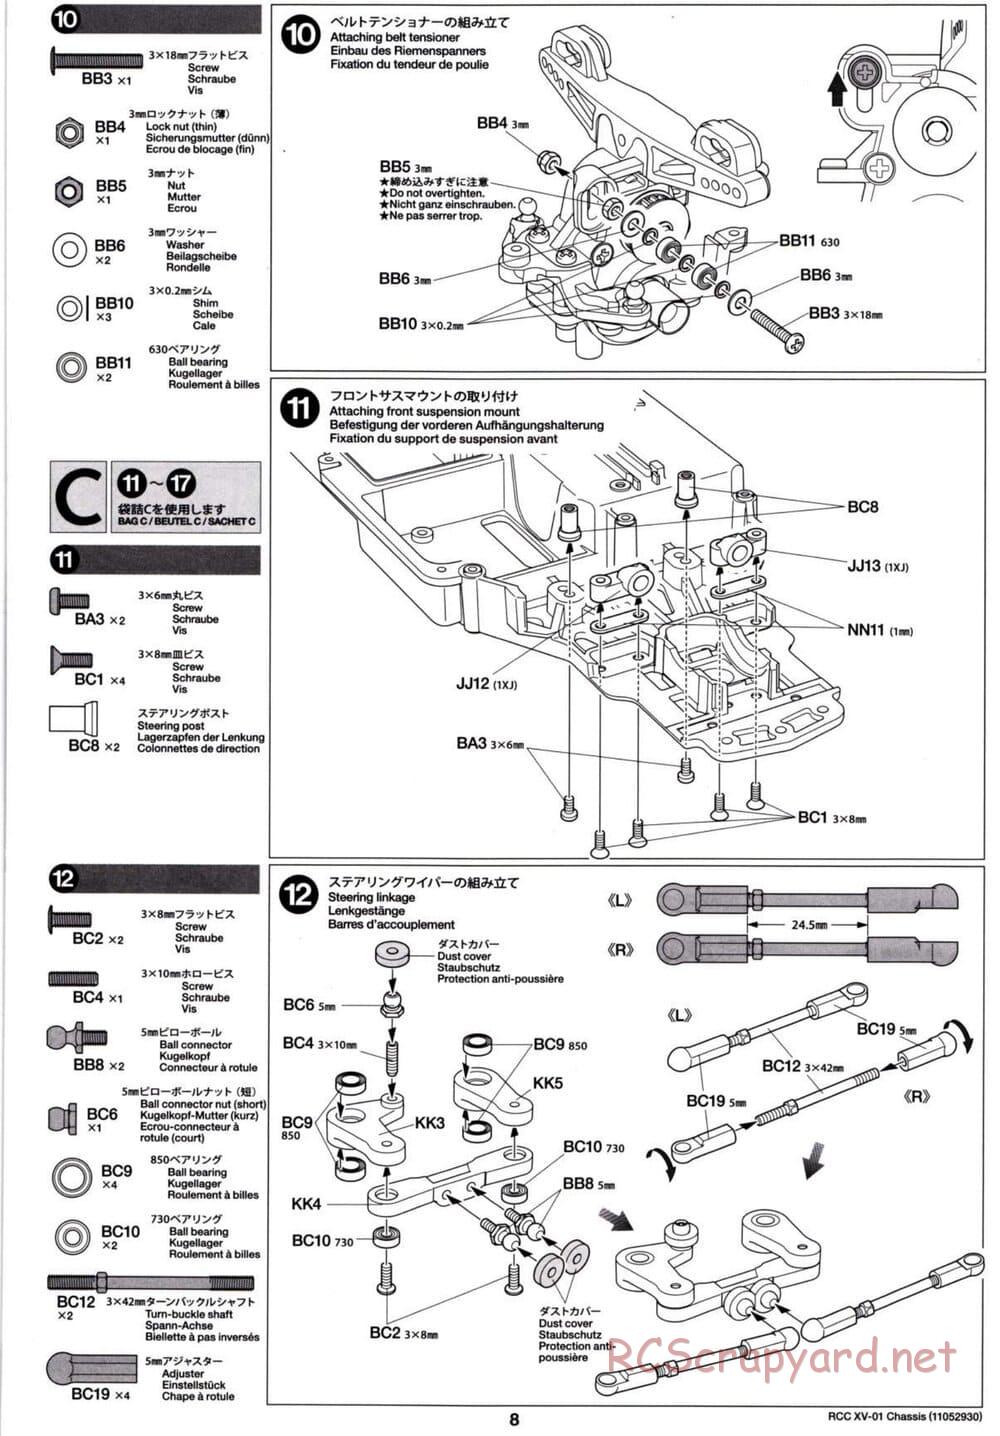 Tamiya - XV-01 Chassis - Manual - Page 8